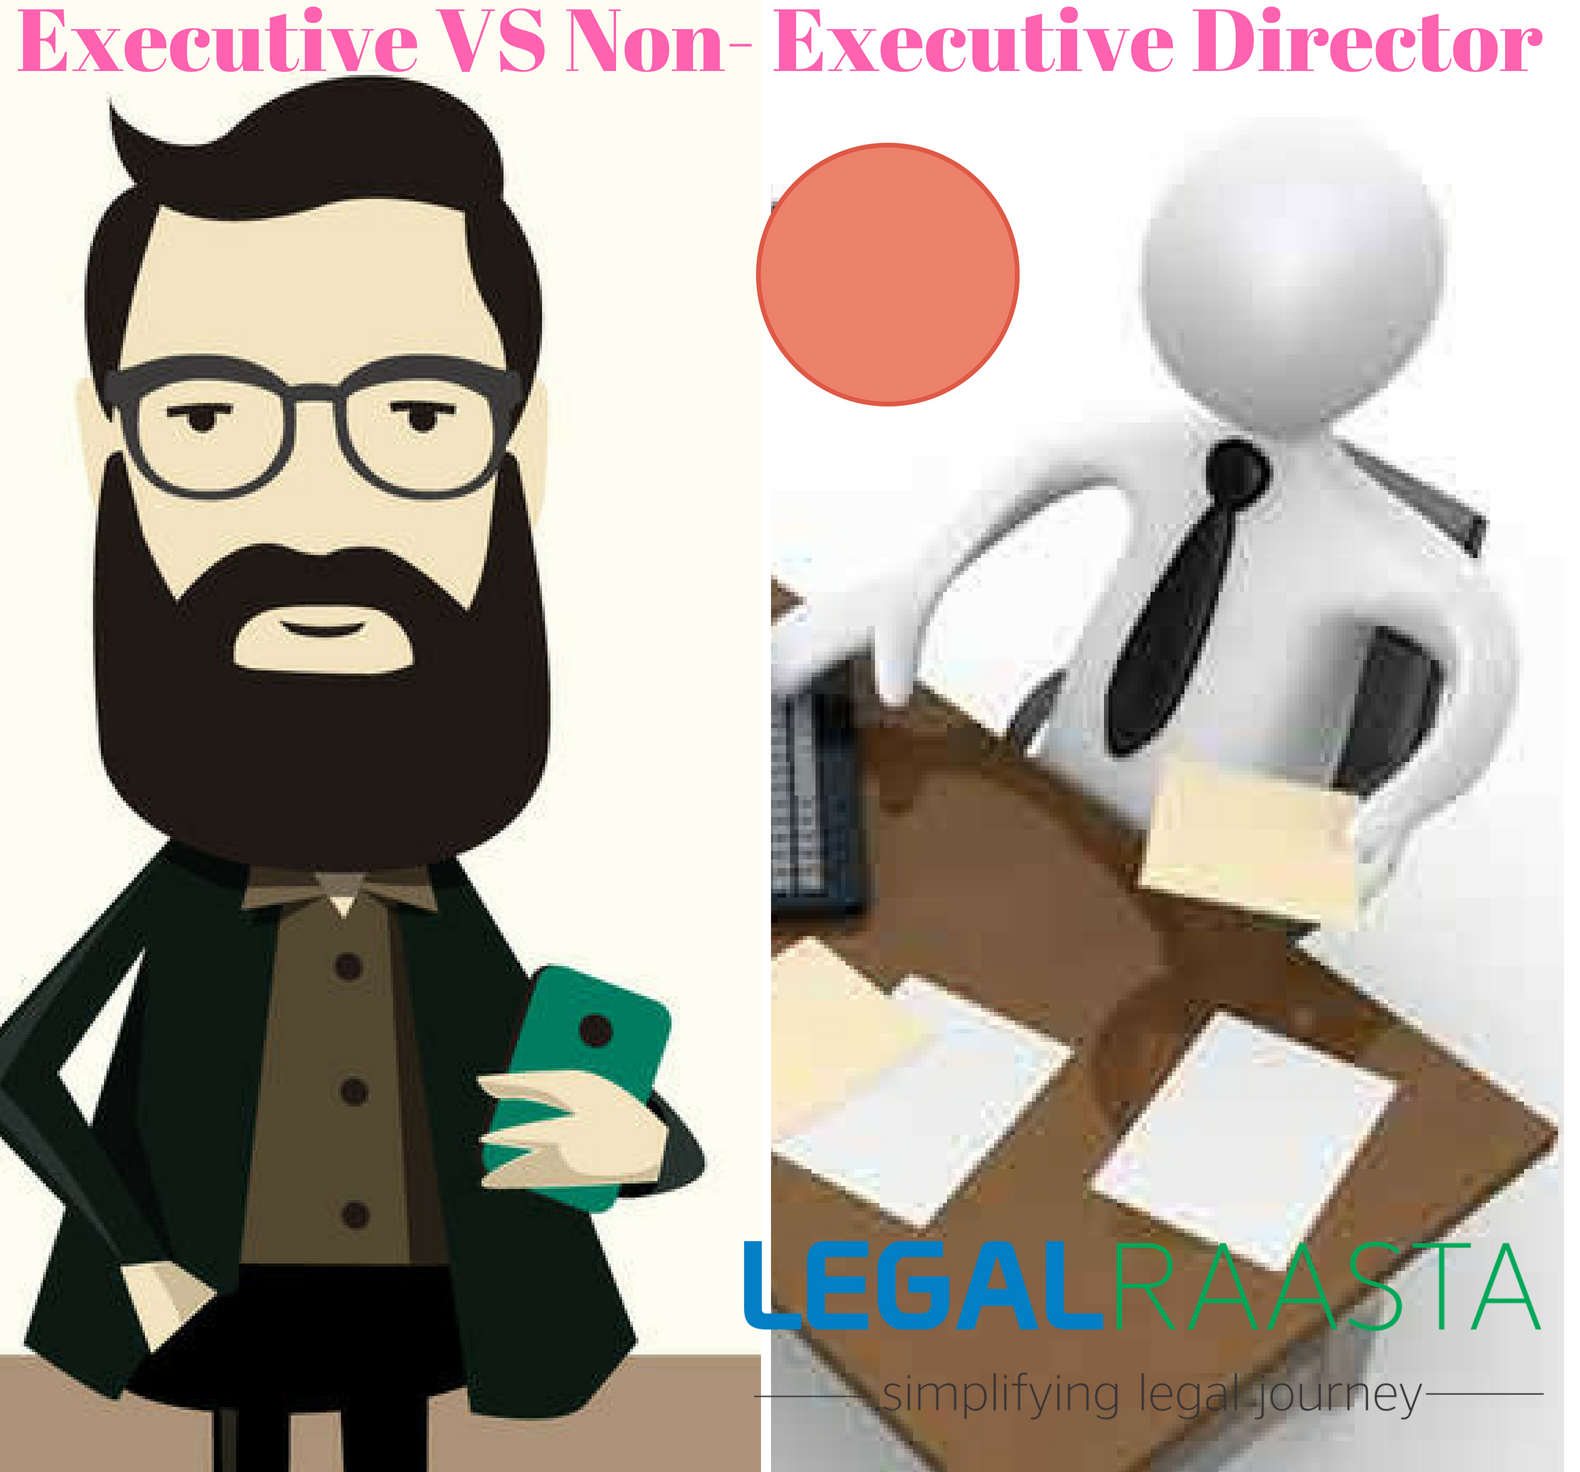 Executive Vs Non-Executive Director